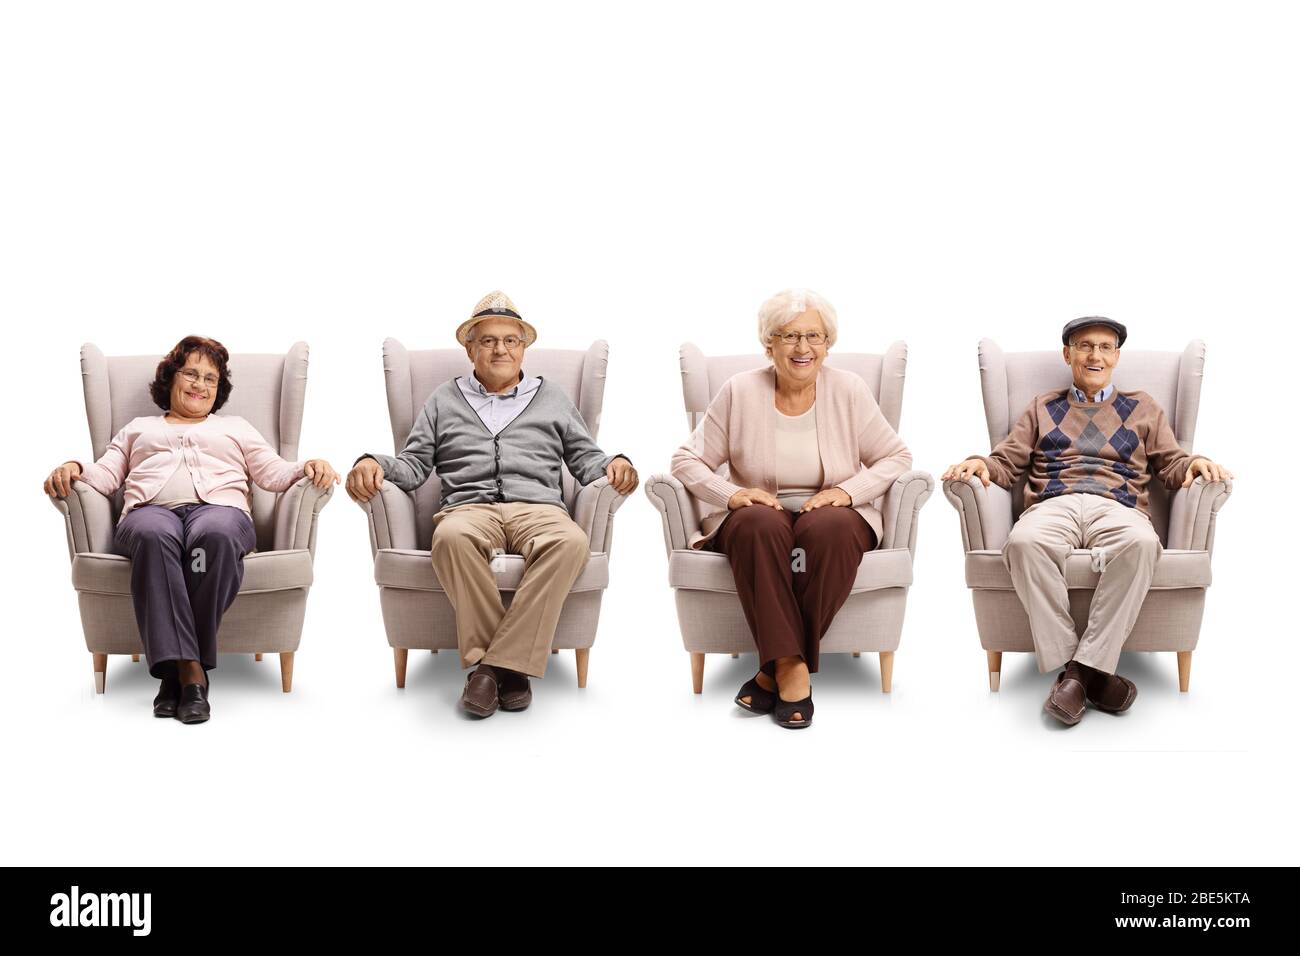 Personnes âgées assises dans des fauteuils isolés sur fond blanc Banque D'Images